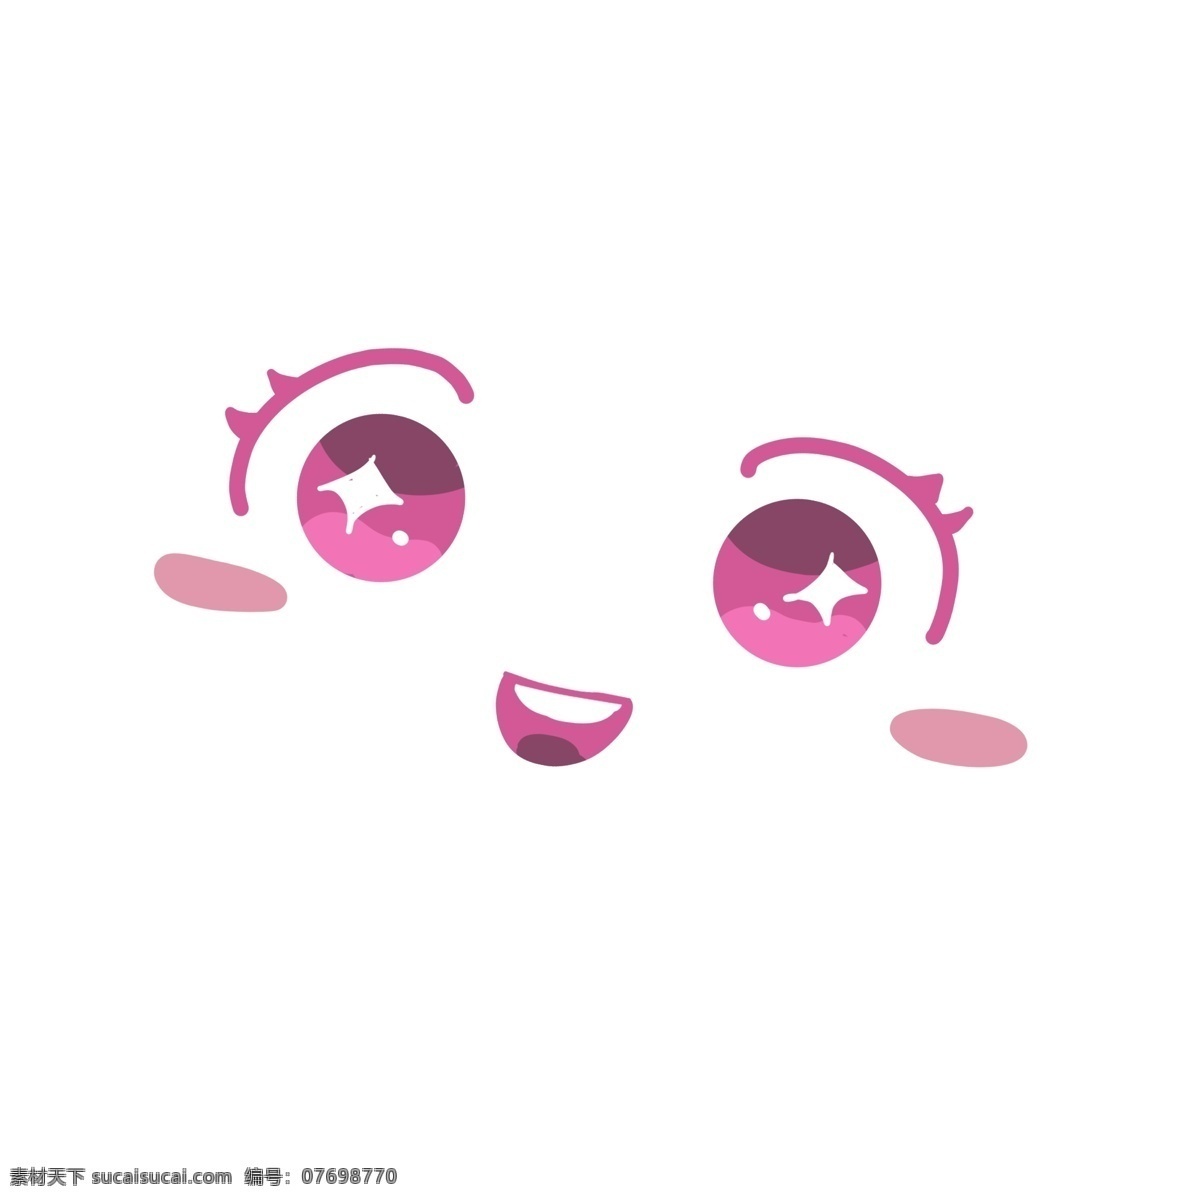 微笑 笑脸 粉色 系 表情 少女 符号 开心 快乐 幸福 温馨 可爱 简约 平面 简单 卡通